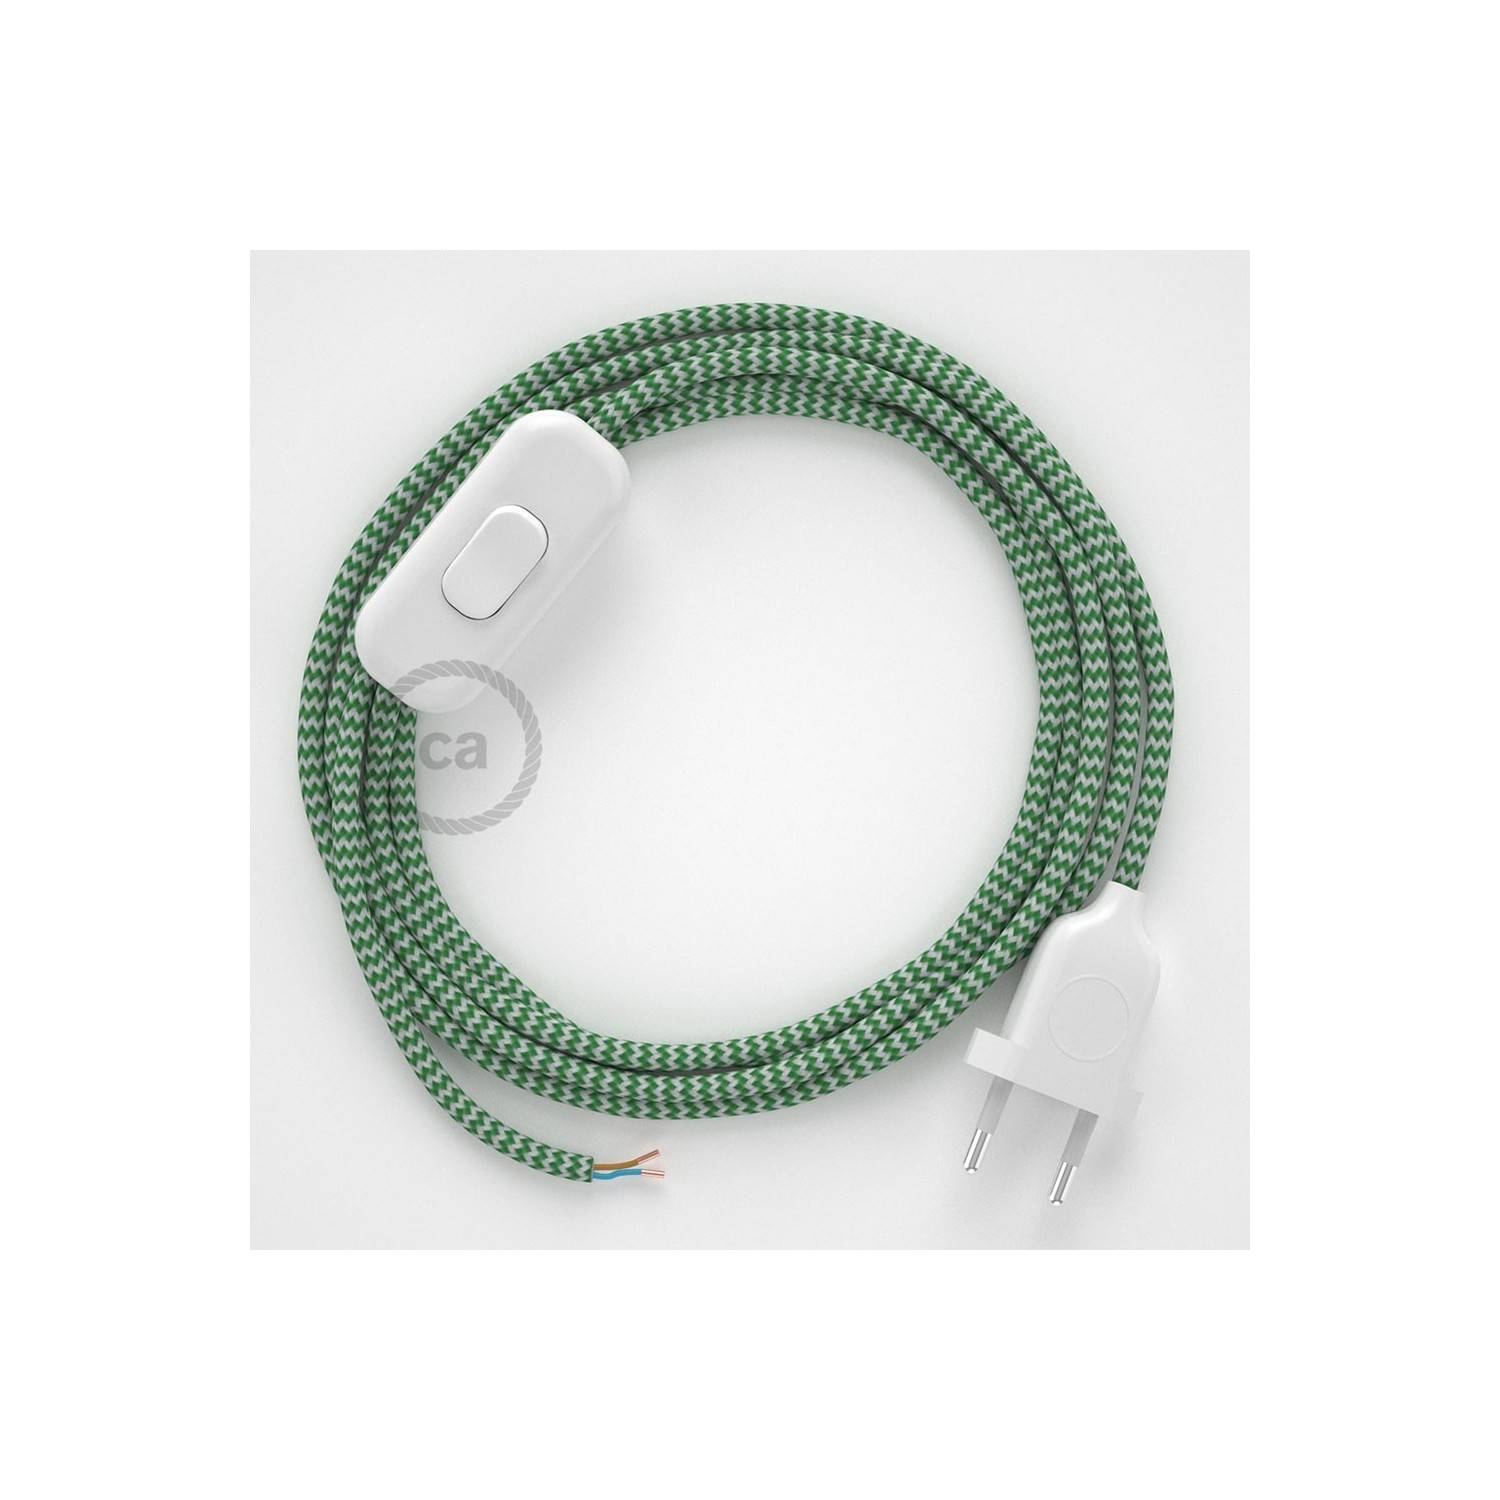 Cableado para lámpara, cable RZ06 Efecto Seda ZigZag Blanco Verde 1,8m. Elige tu el color de la clavija y del interruptor!